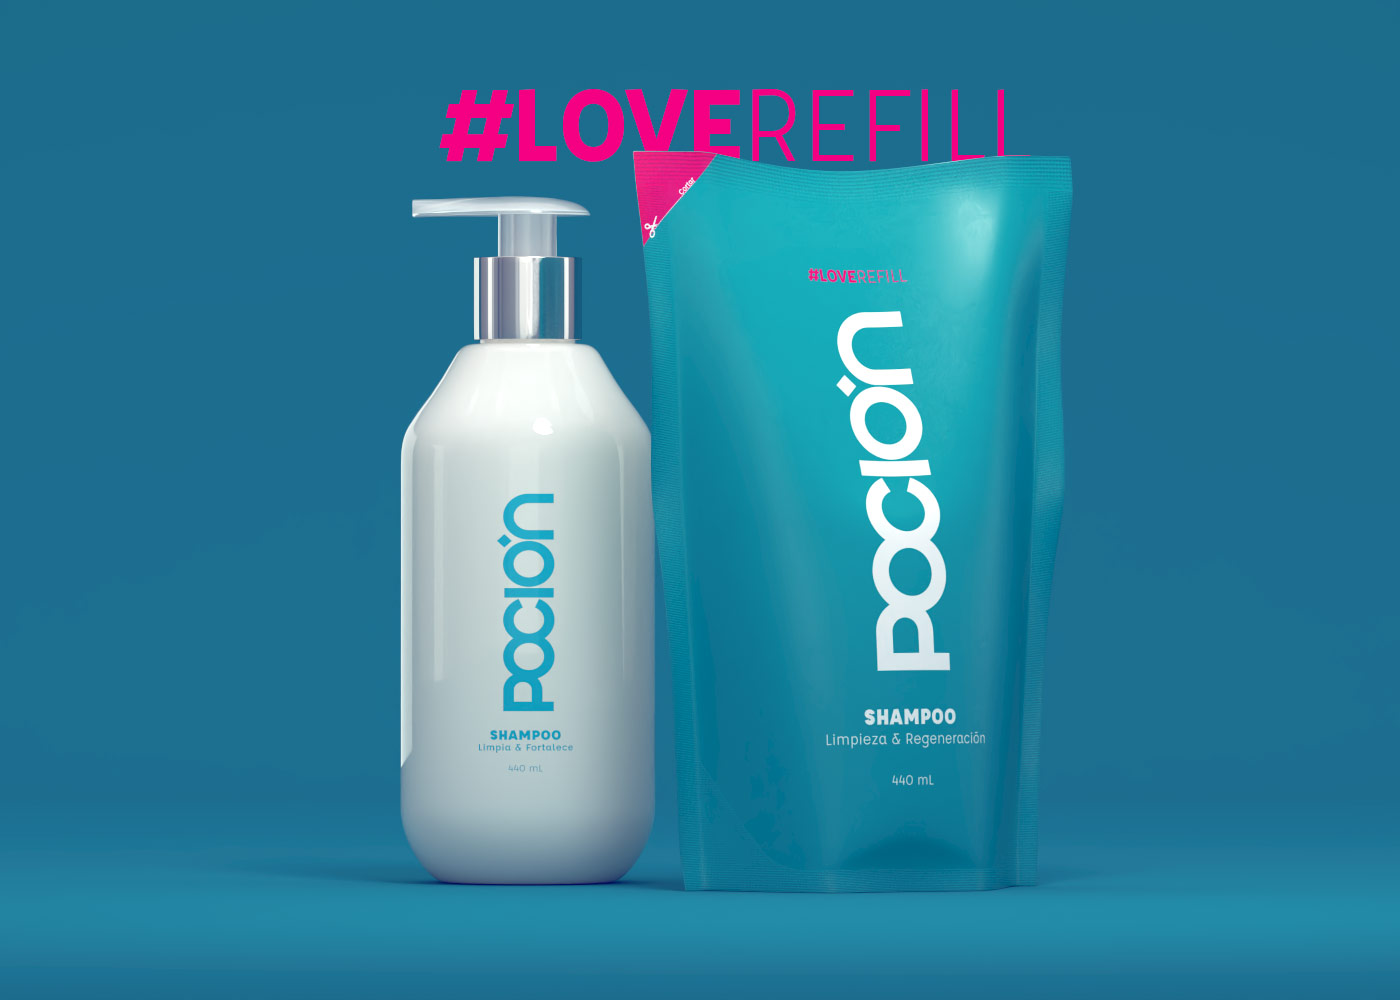 pocion-refill-shampoo-loverefill